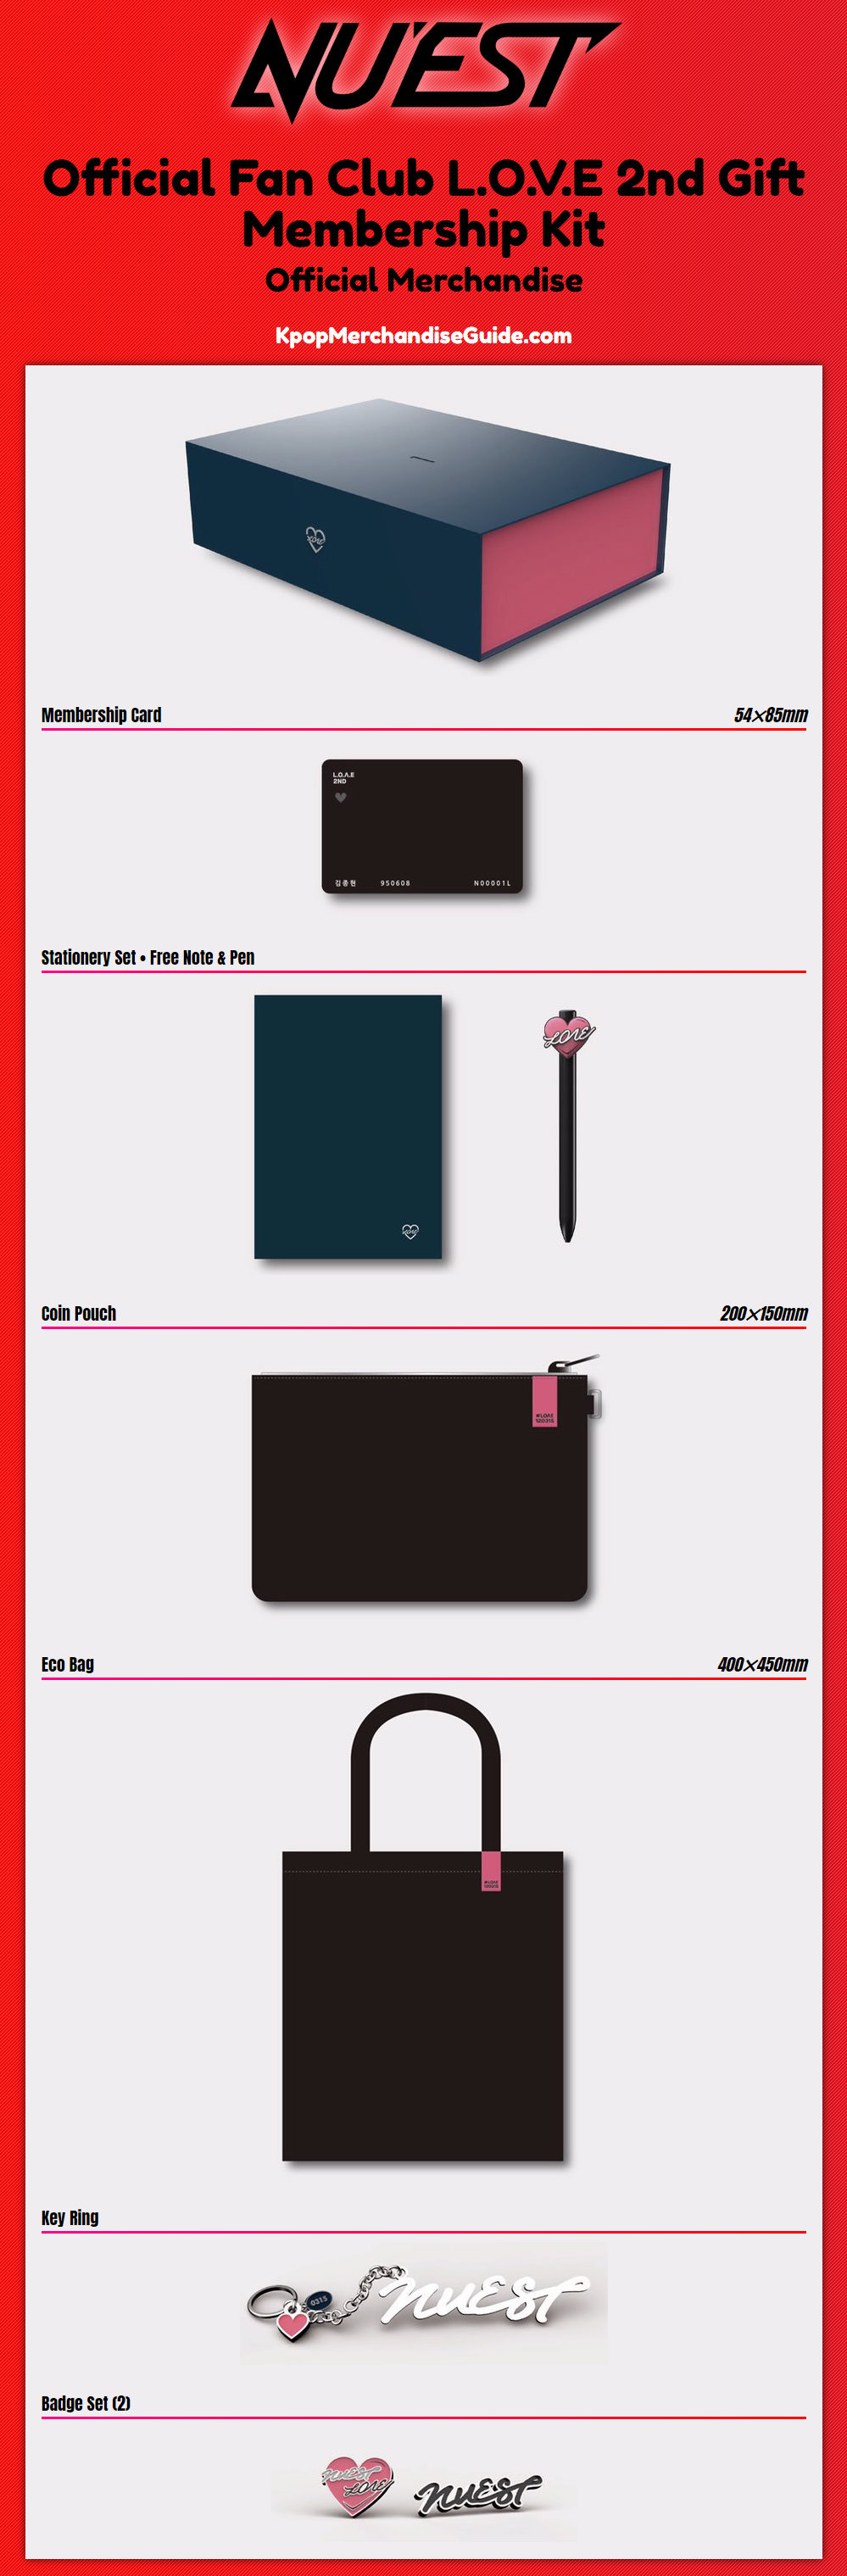 NU’EST Official Fan Club L.O.V.E 2nd Gift Membership Kit